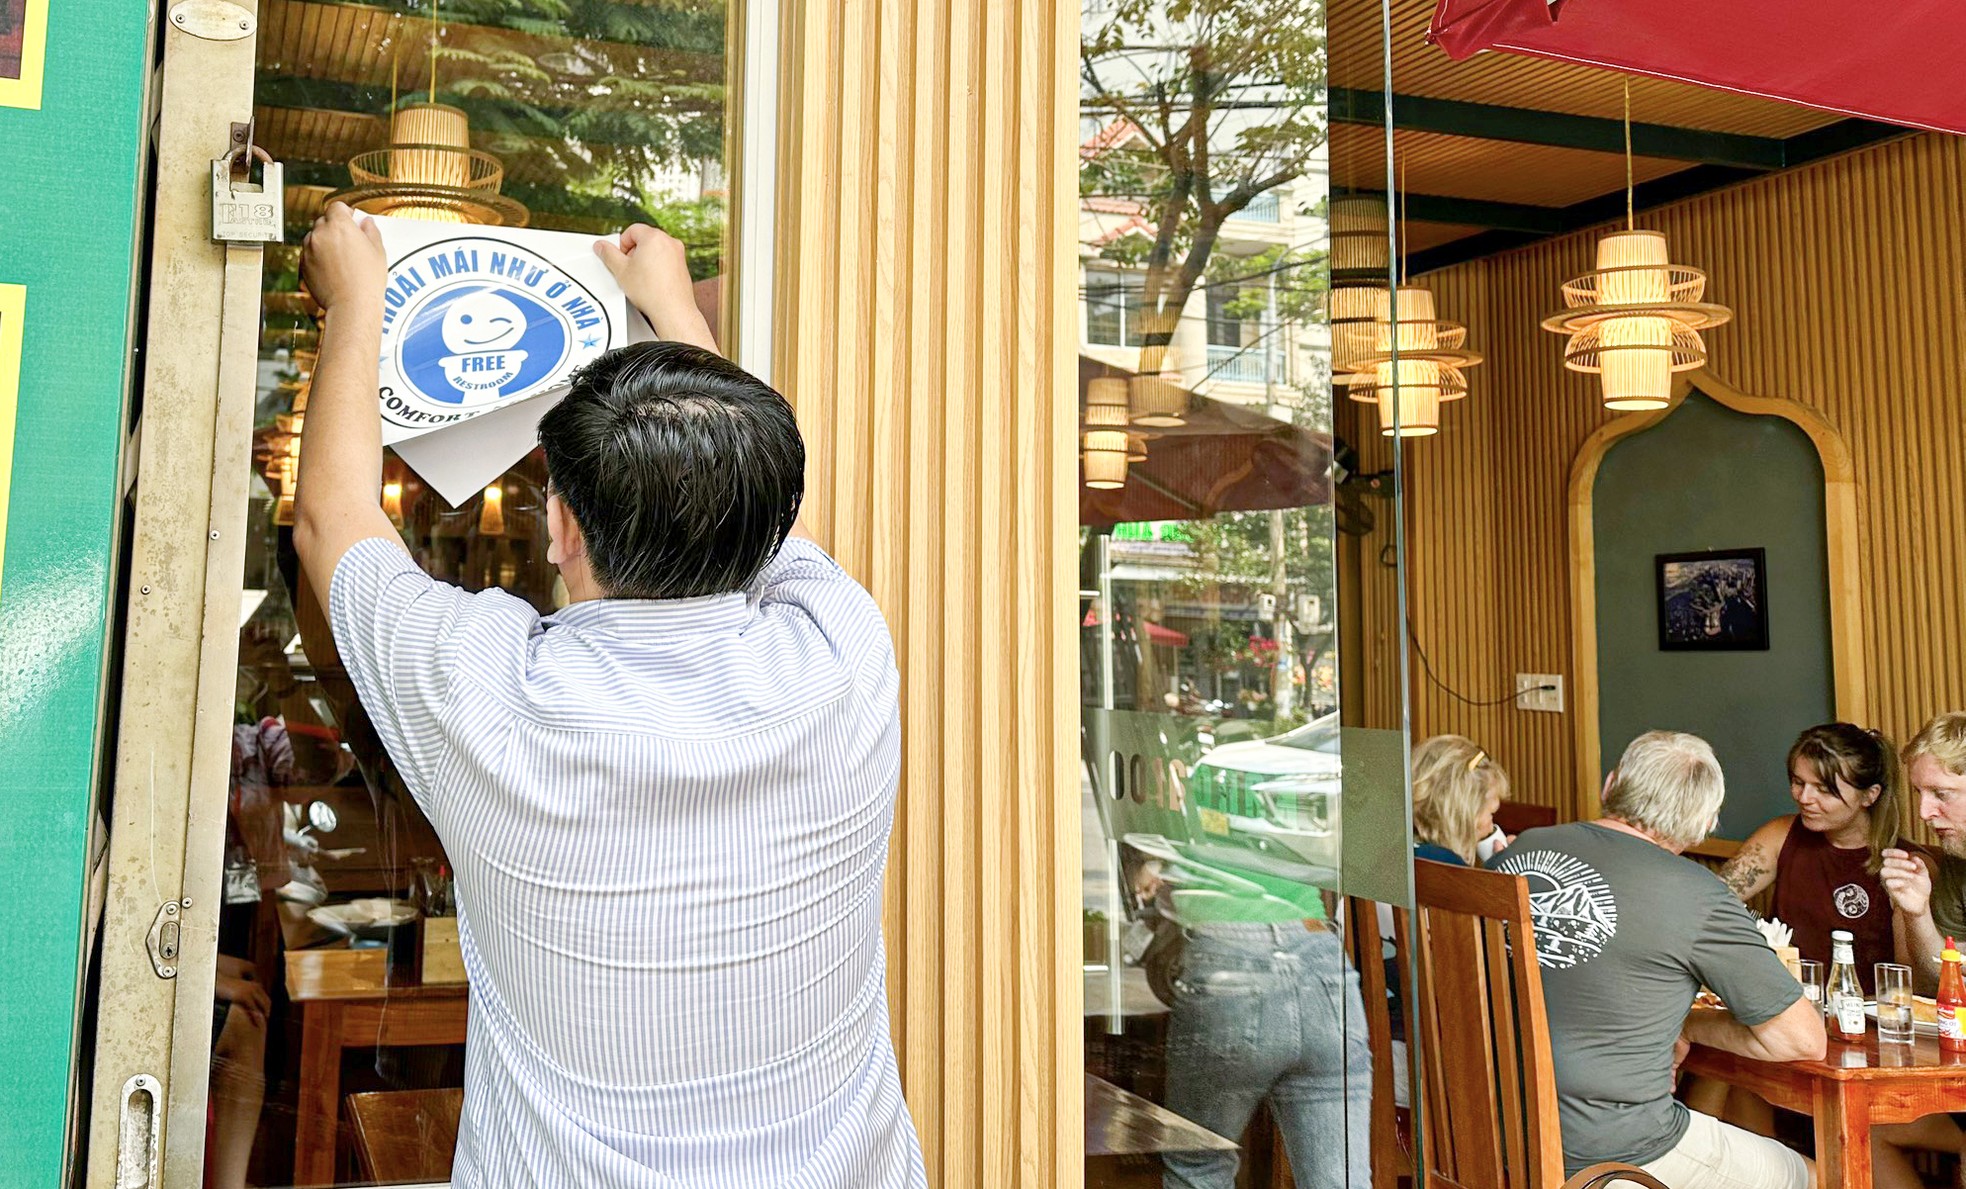 Loạt nhà hàng, khách sạn ở Đà Nẵng dán biển mời du khách dùng nhà vệ sinh miễn phí - Ảnh 1.